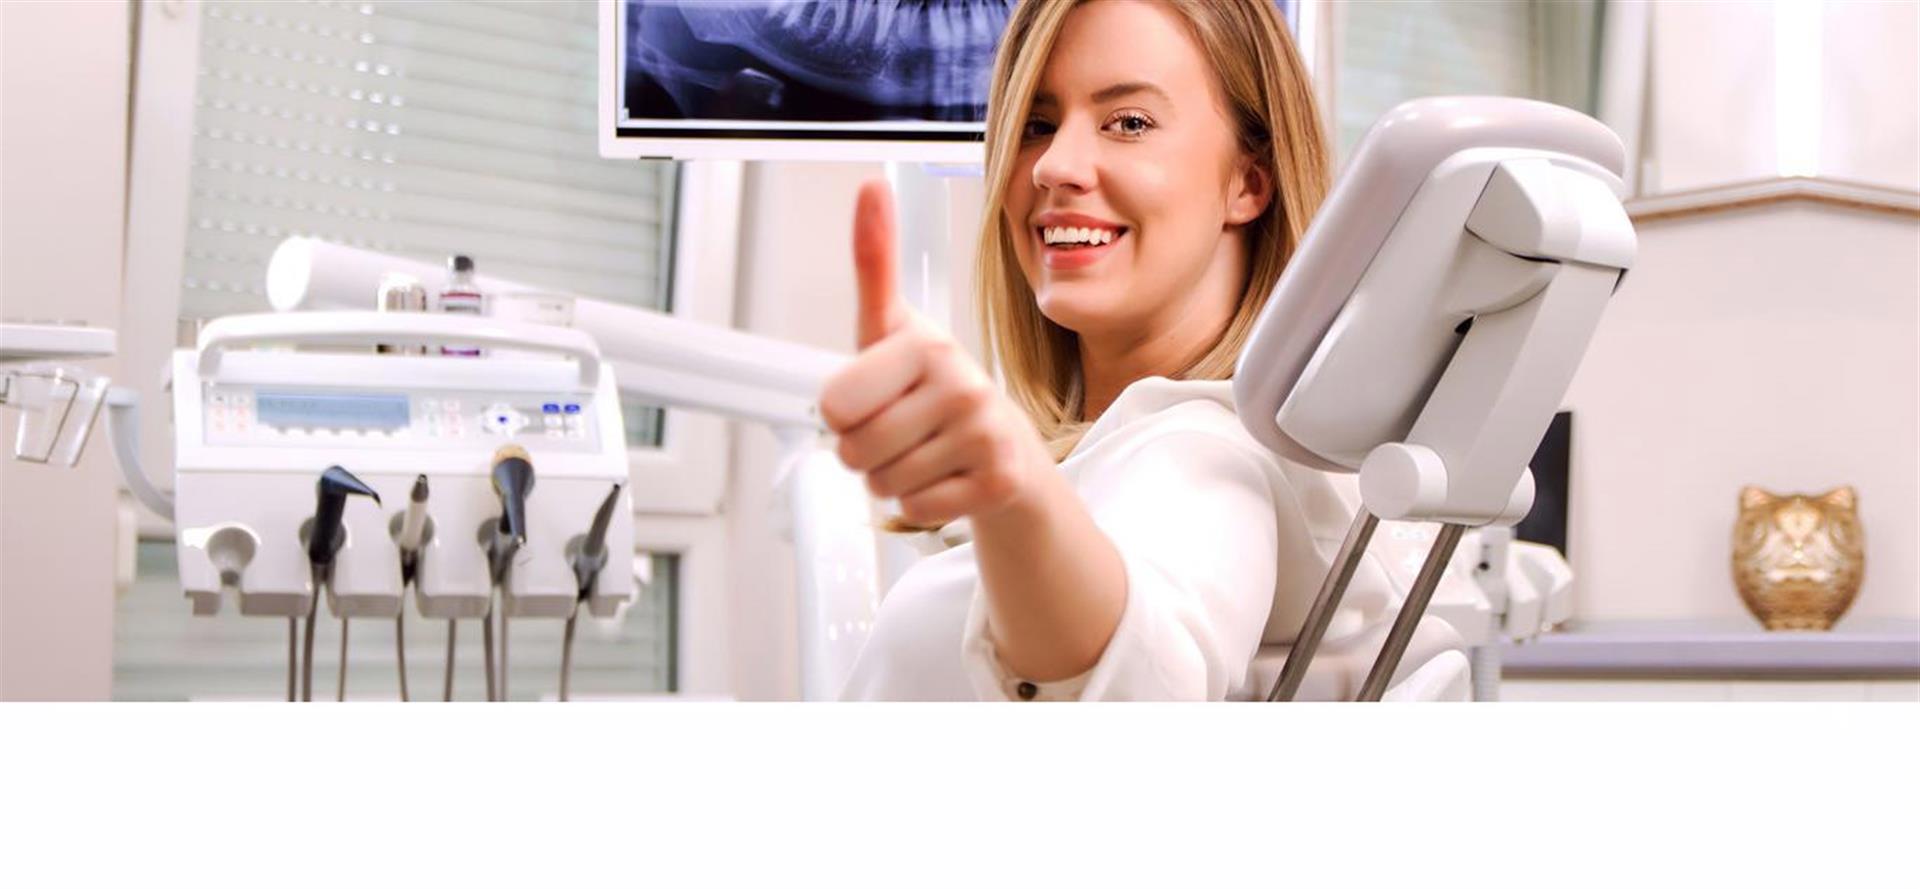 implantologia dental castellon